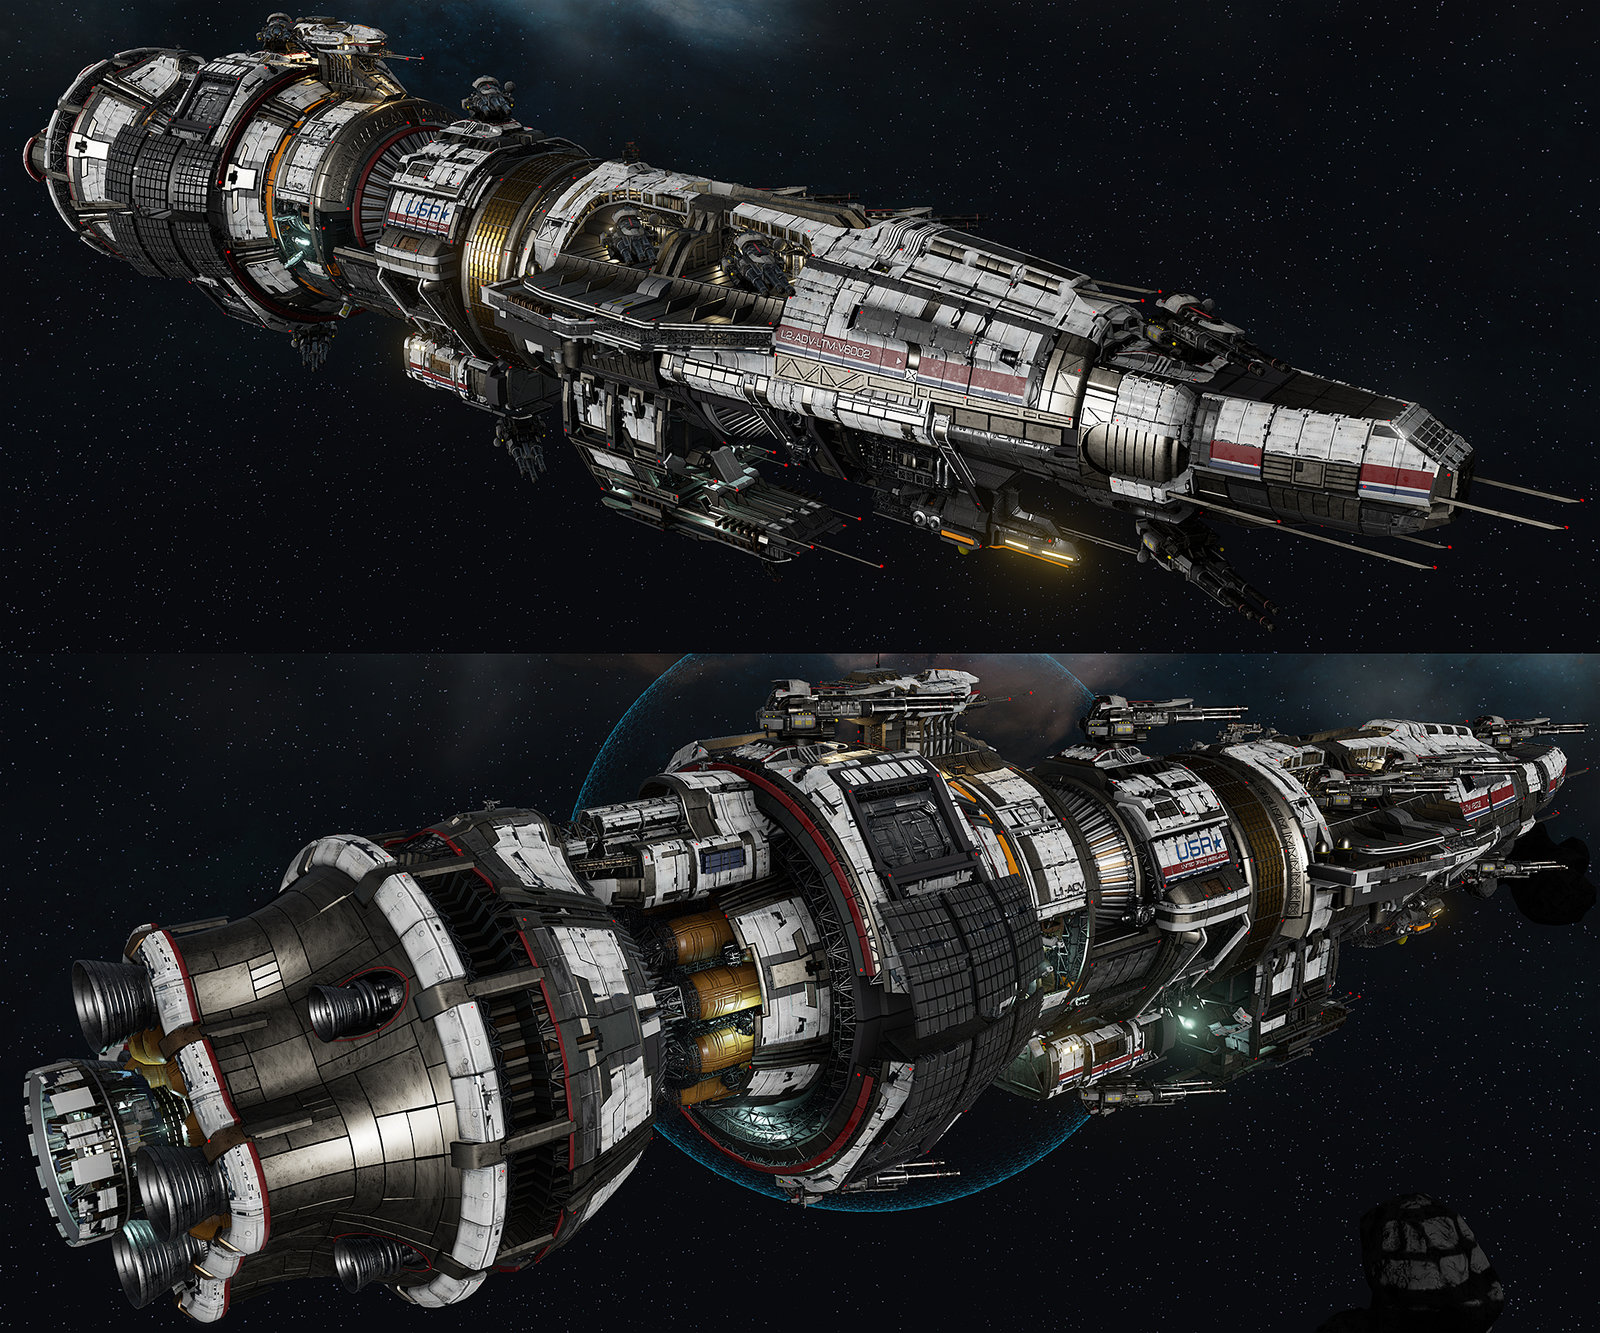 USR "Destroyer" - Fractured Space